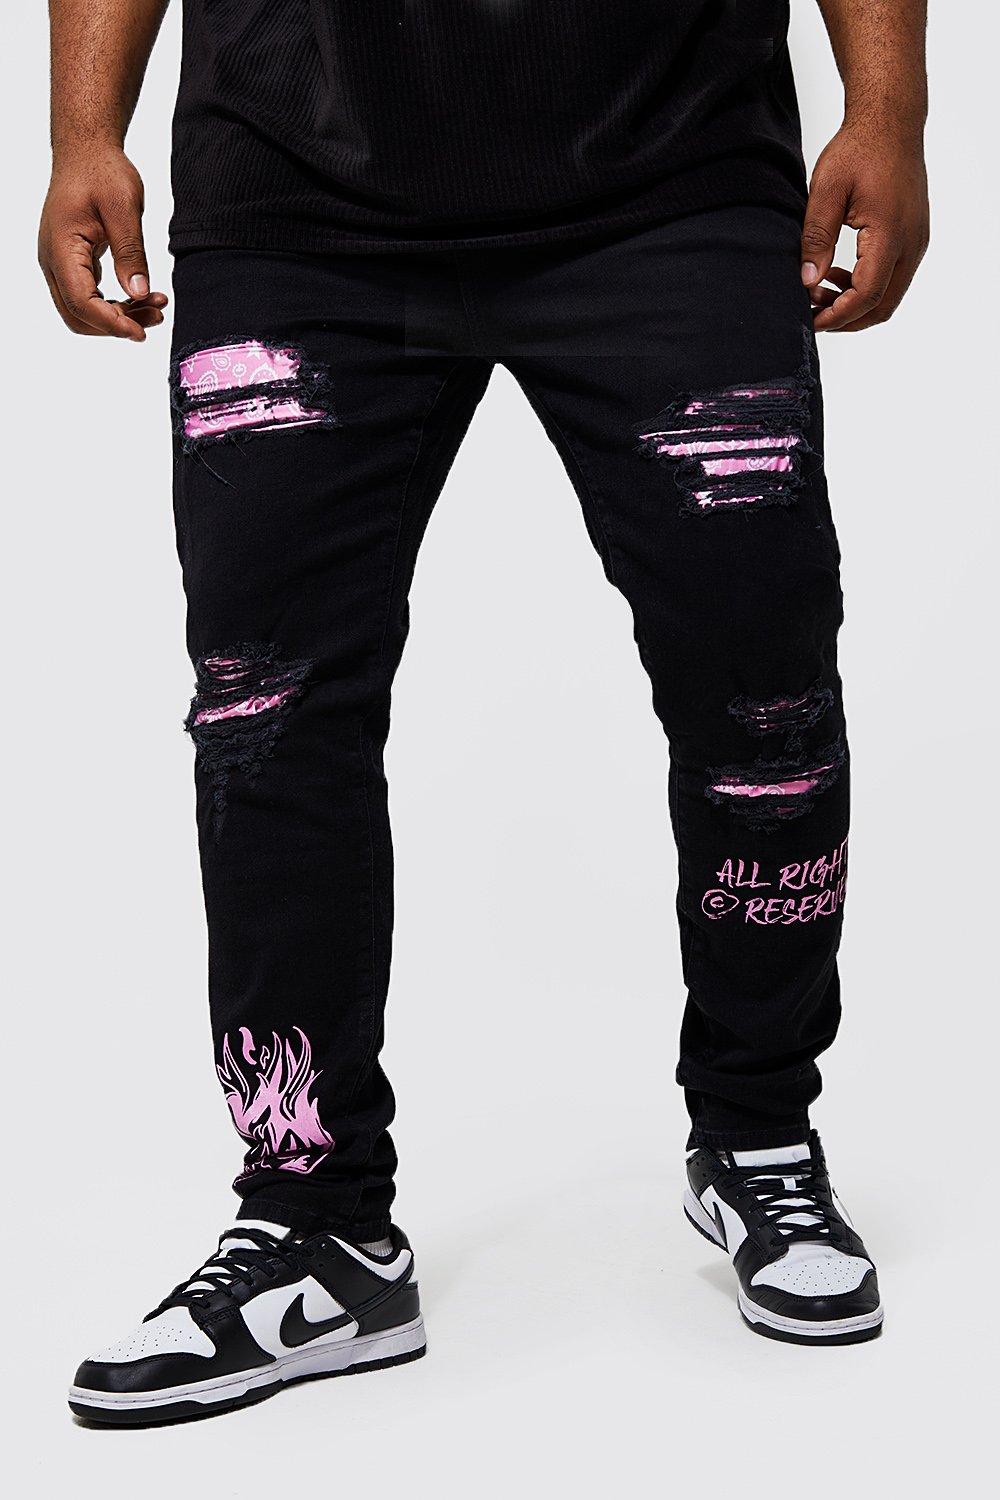 grande taille - jean skinny déchiré à motif bandana et graffiti homme - noir - 38, noir